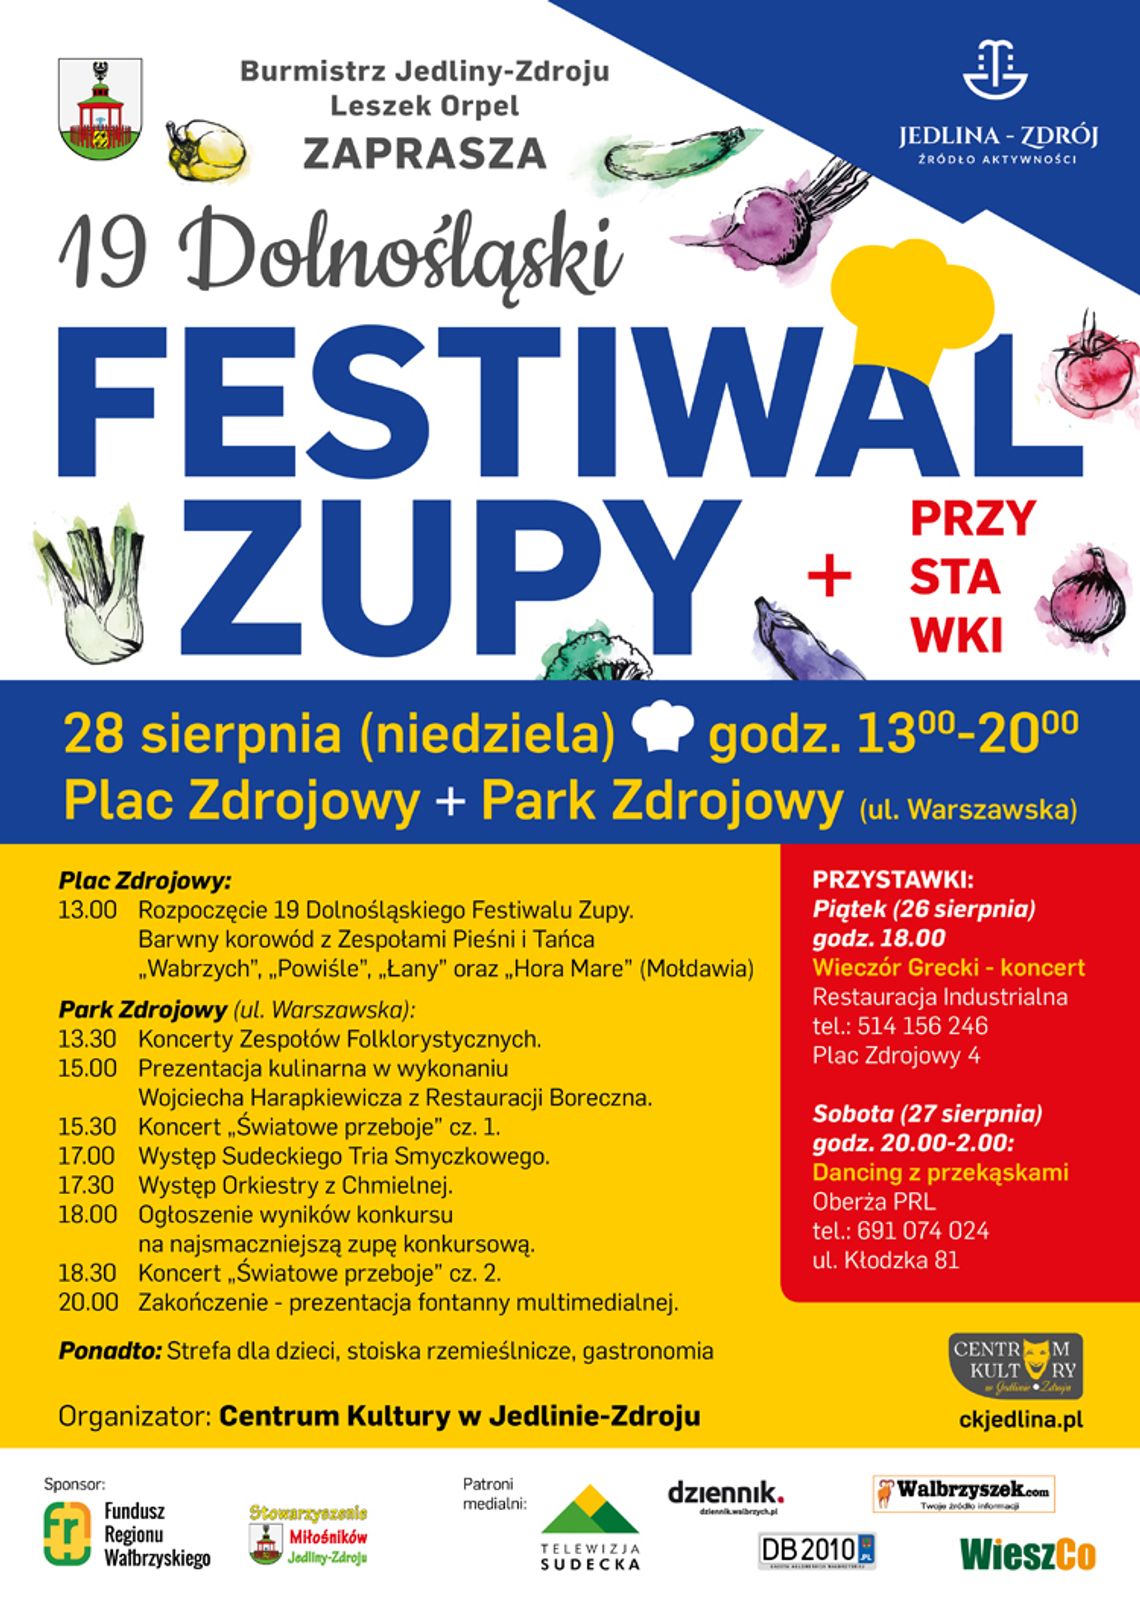 Już 28 sierpnia w Jedlinie-Zdroju odbędzie się Festiwal Zupy